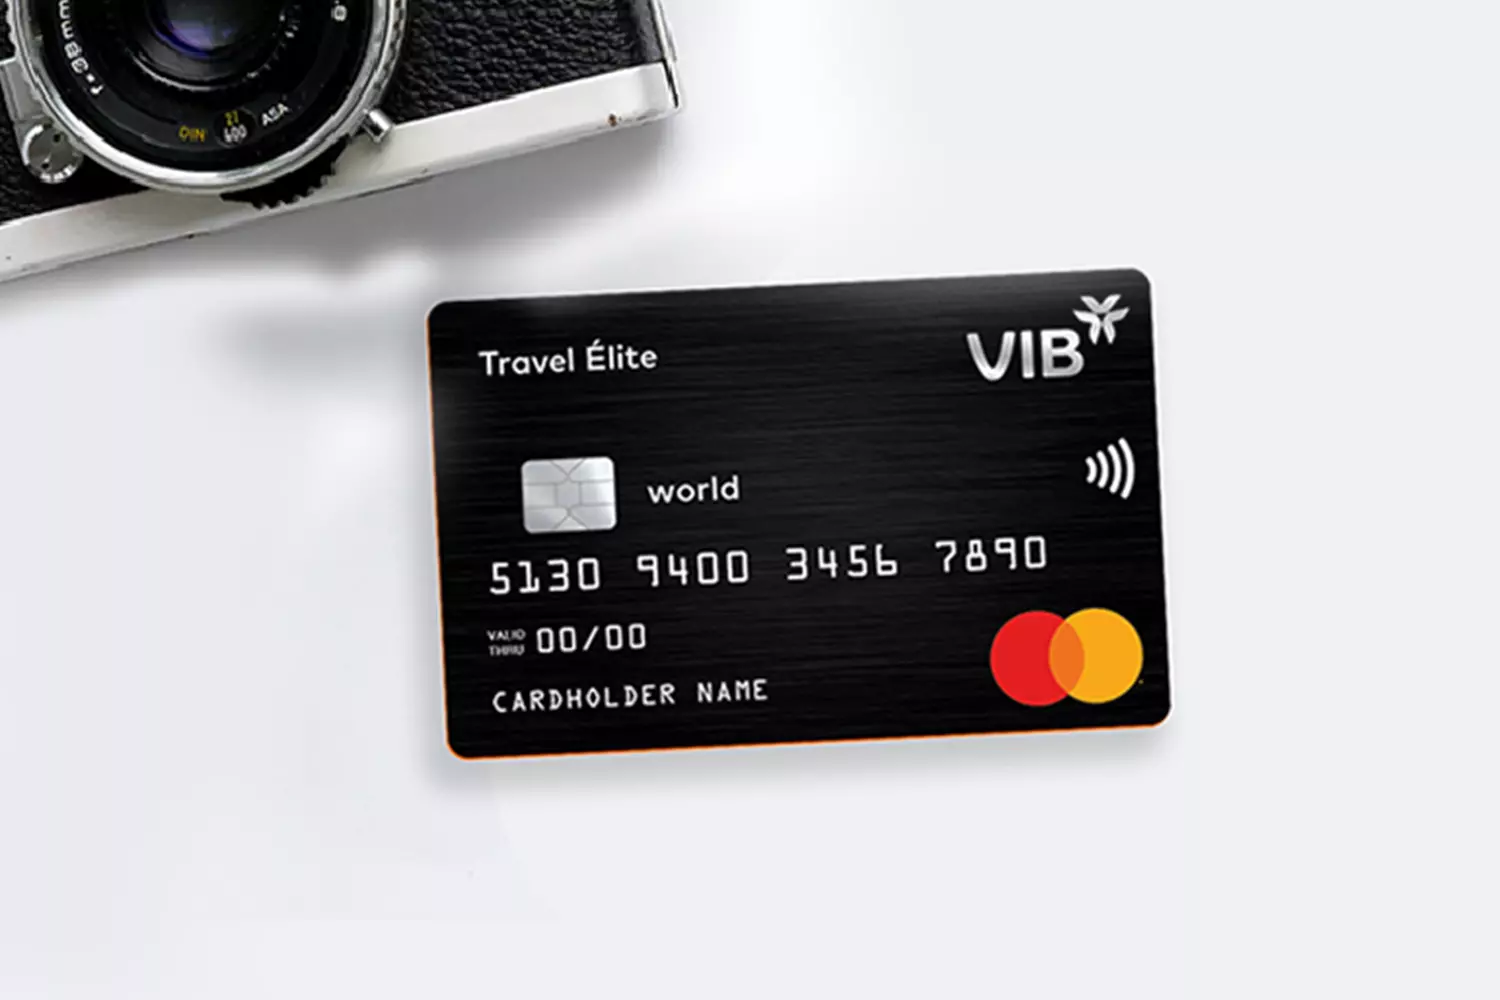 Thẻ tín dụng dành cho du lịch VIB Travel Élite mang đến nhiều ưu đãi hấp dẫn